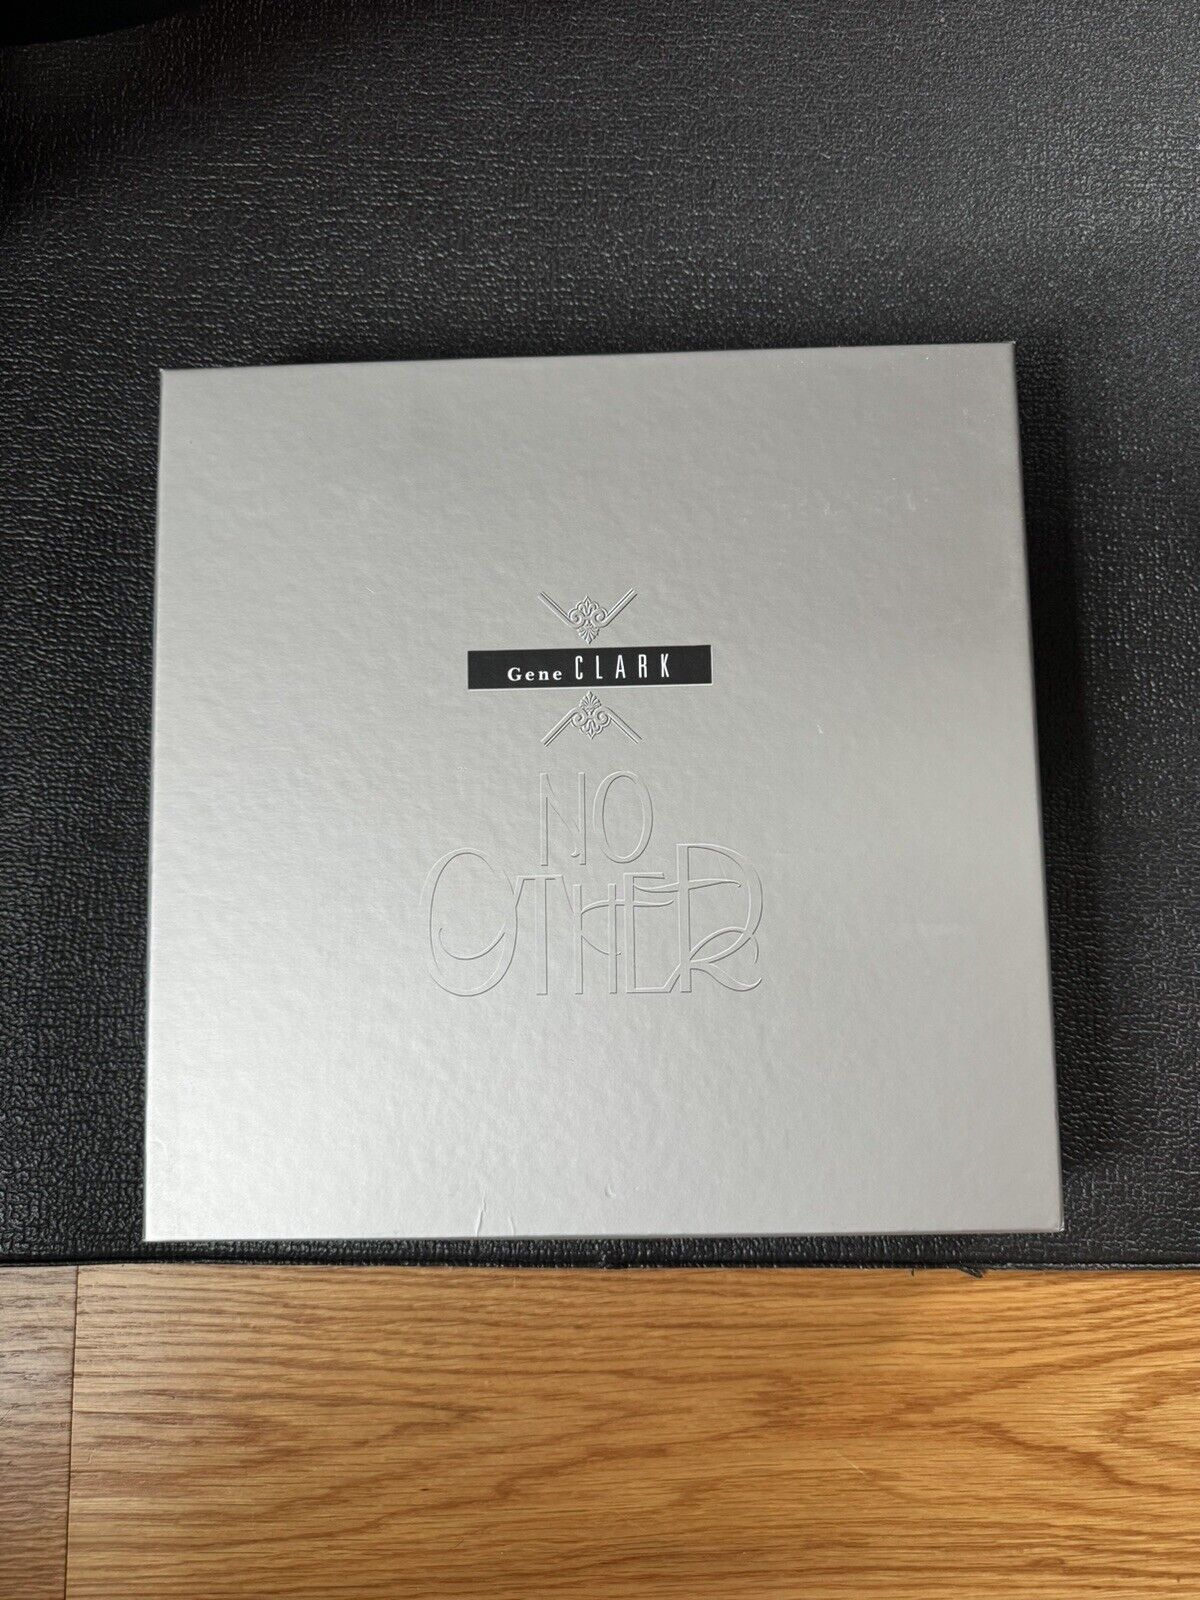 Gene Clark No Other deluxe vinyl box set LP + 3 CD + 7”. 2 rare bonus flexi OOP